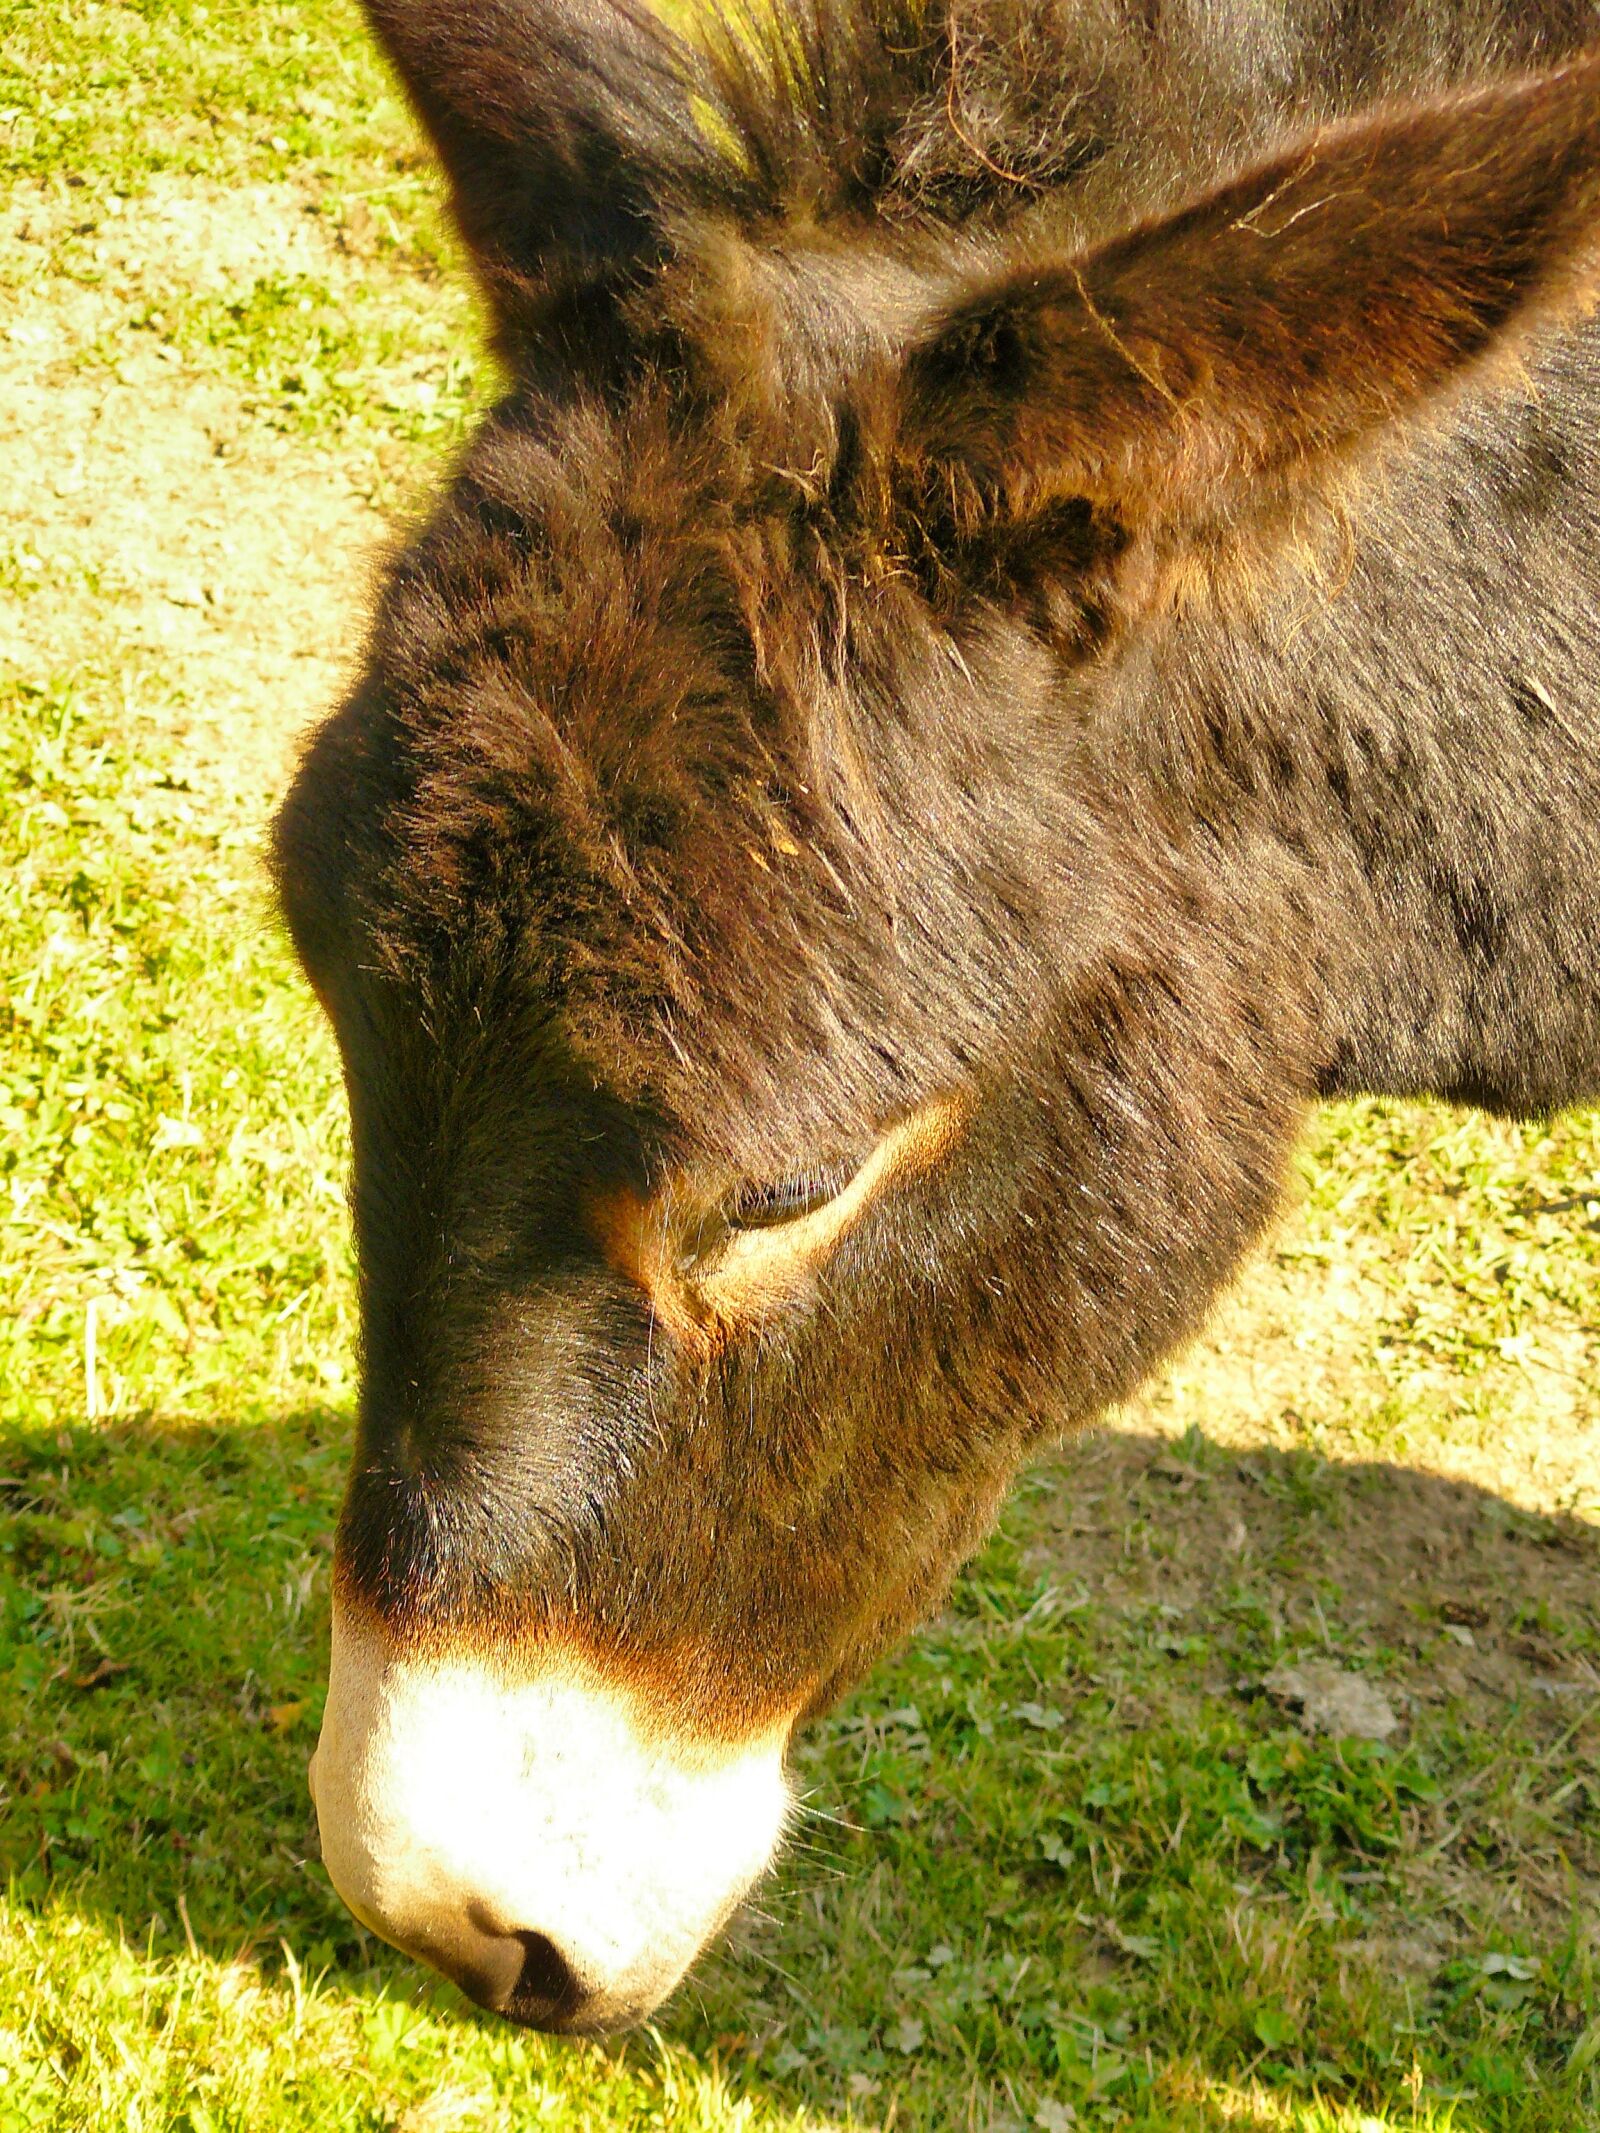 Panasonic DMC-FZ8 sample photo. Donkey, mule, animal photography